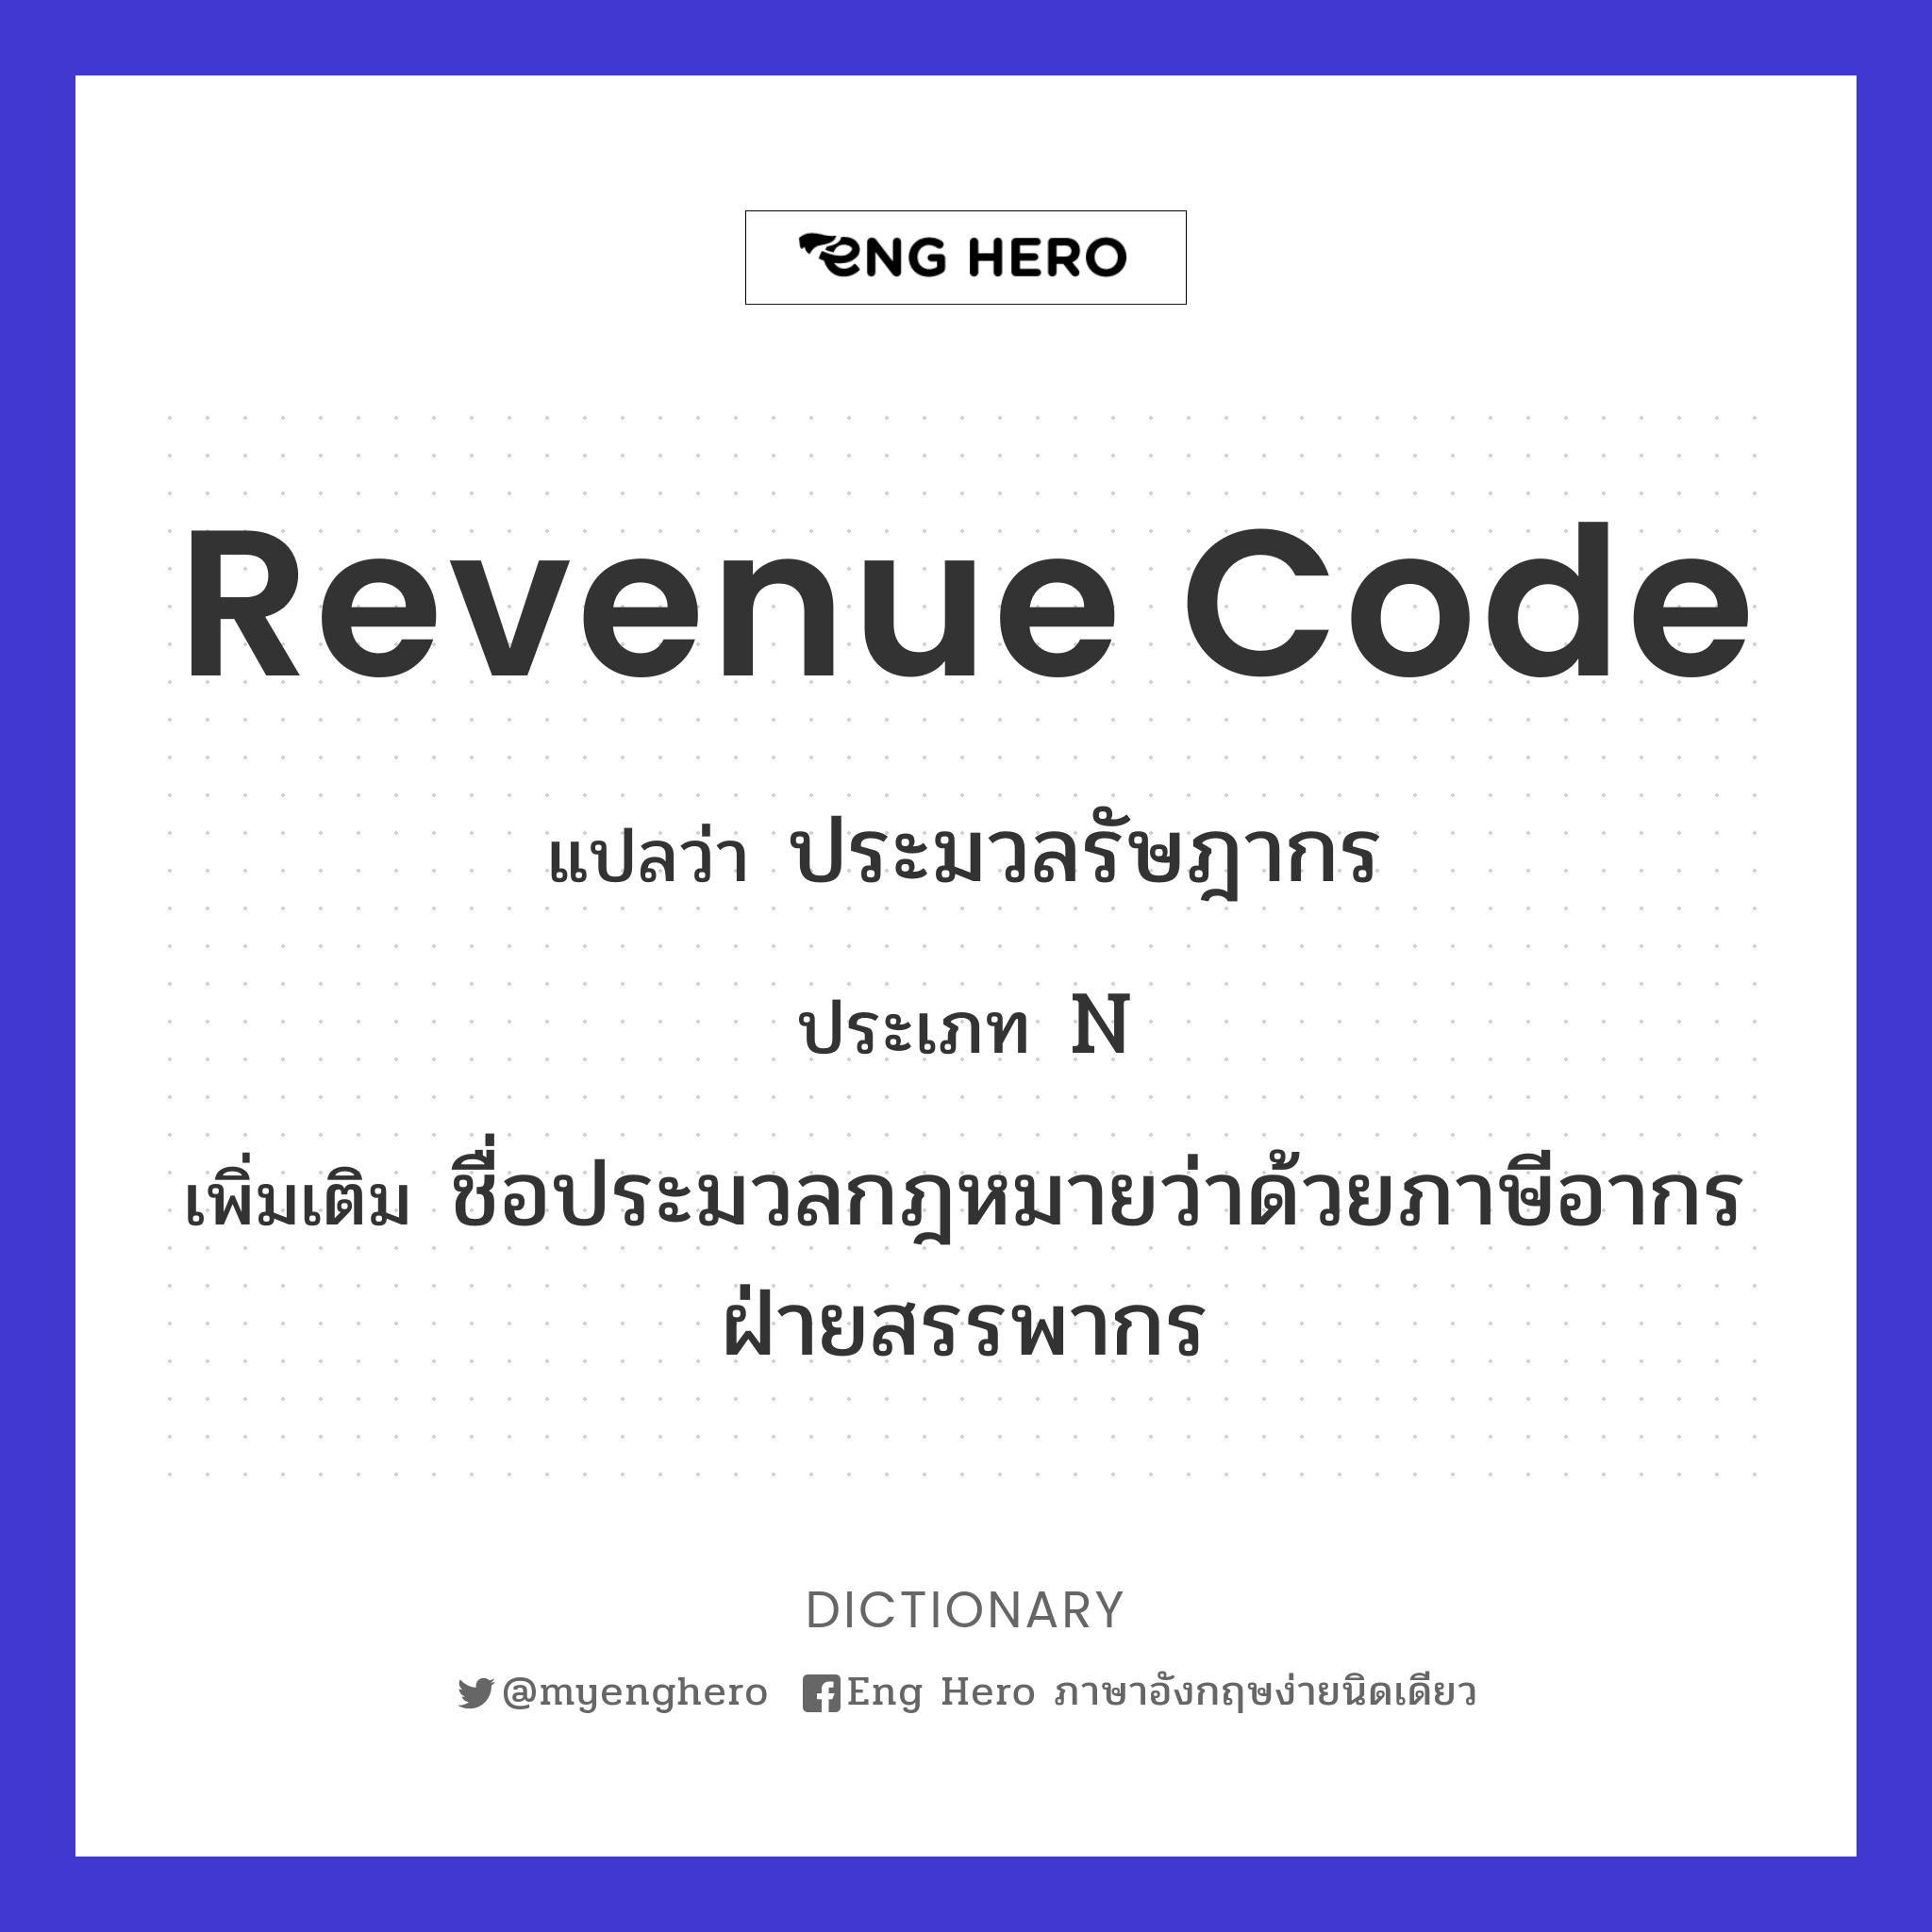 Revenue Code